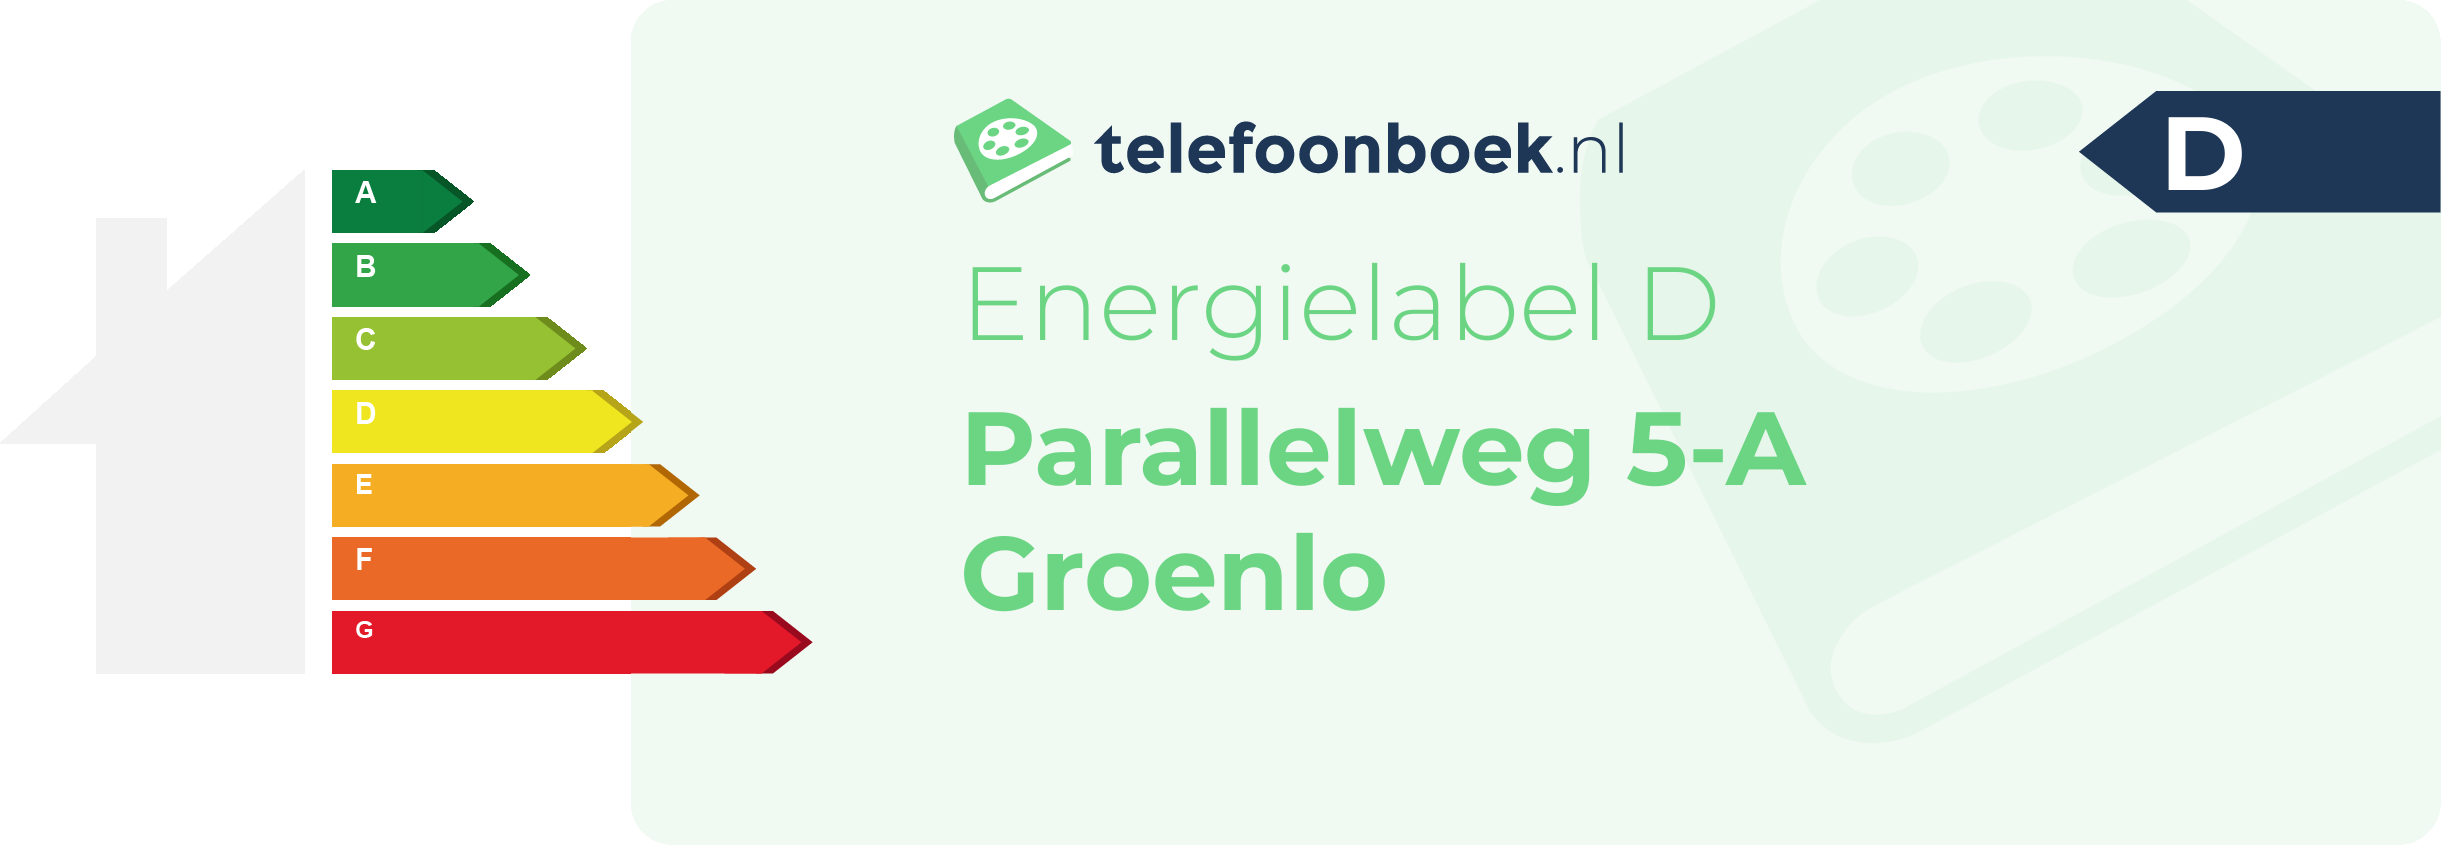 Energielabel Parallelweg 5-A Groenlo